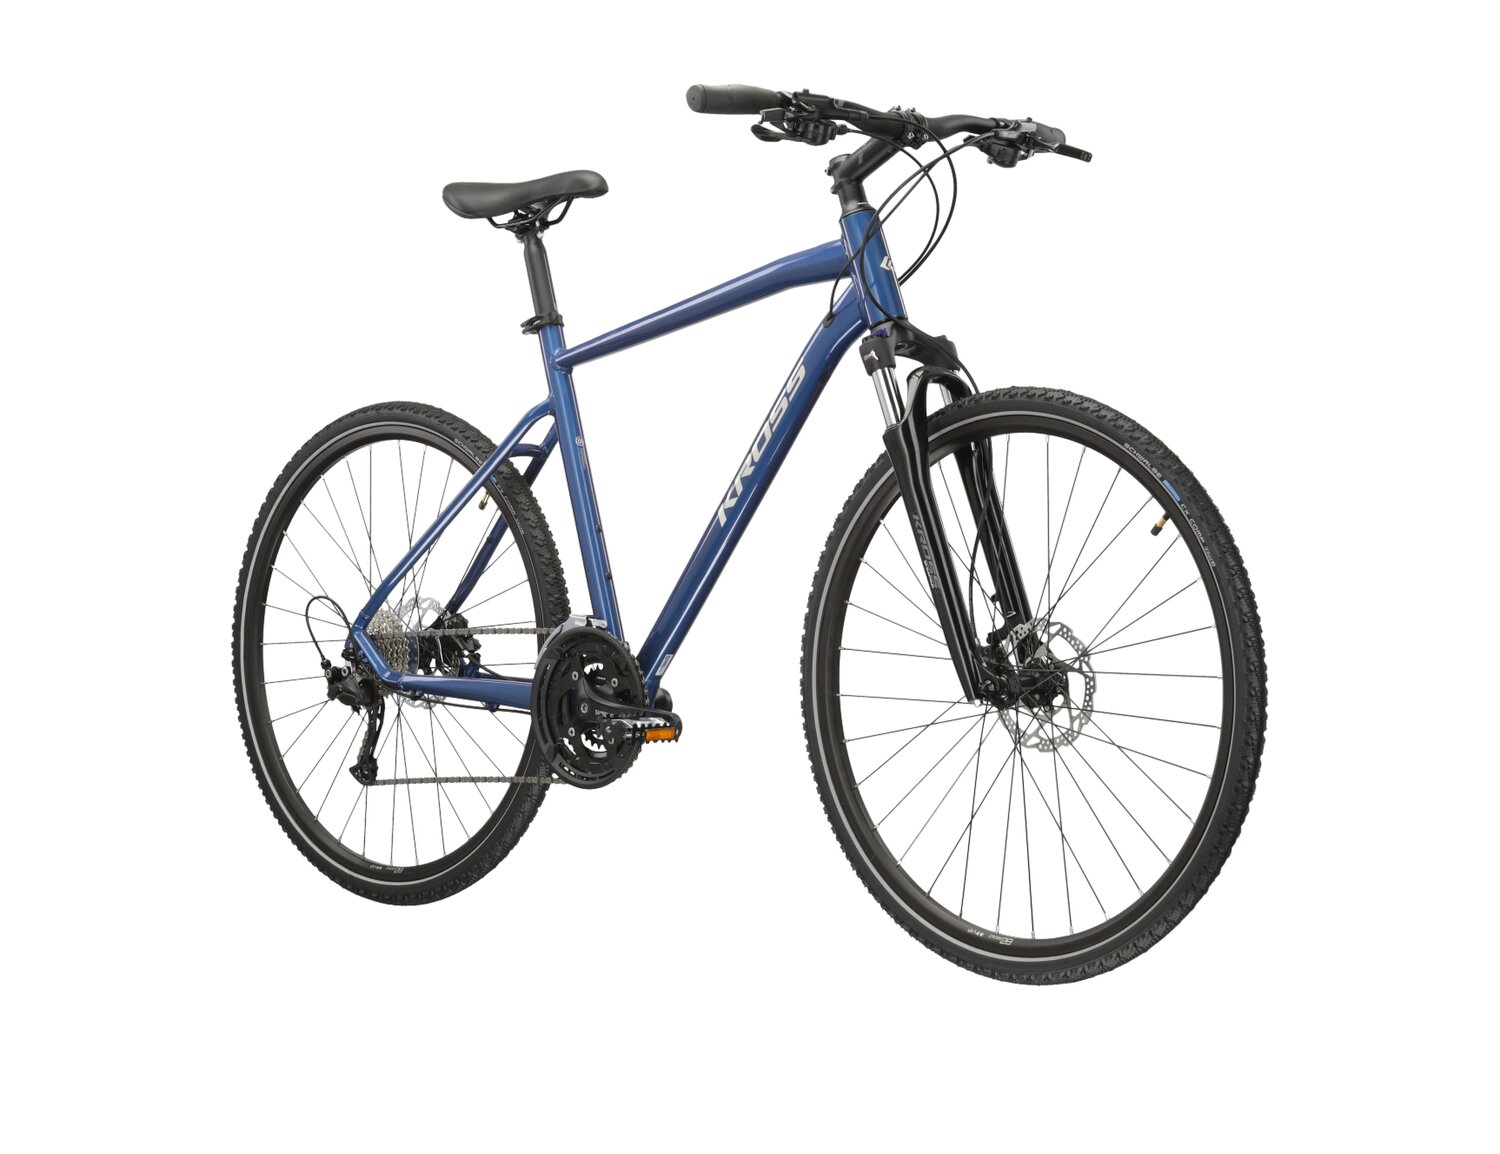  Rower crossowy KROSS Evado 6.0 na aluminiowej ramie w kolorze niebieskim wyposażony w osprzęt Shimano